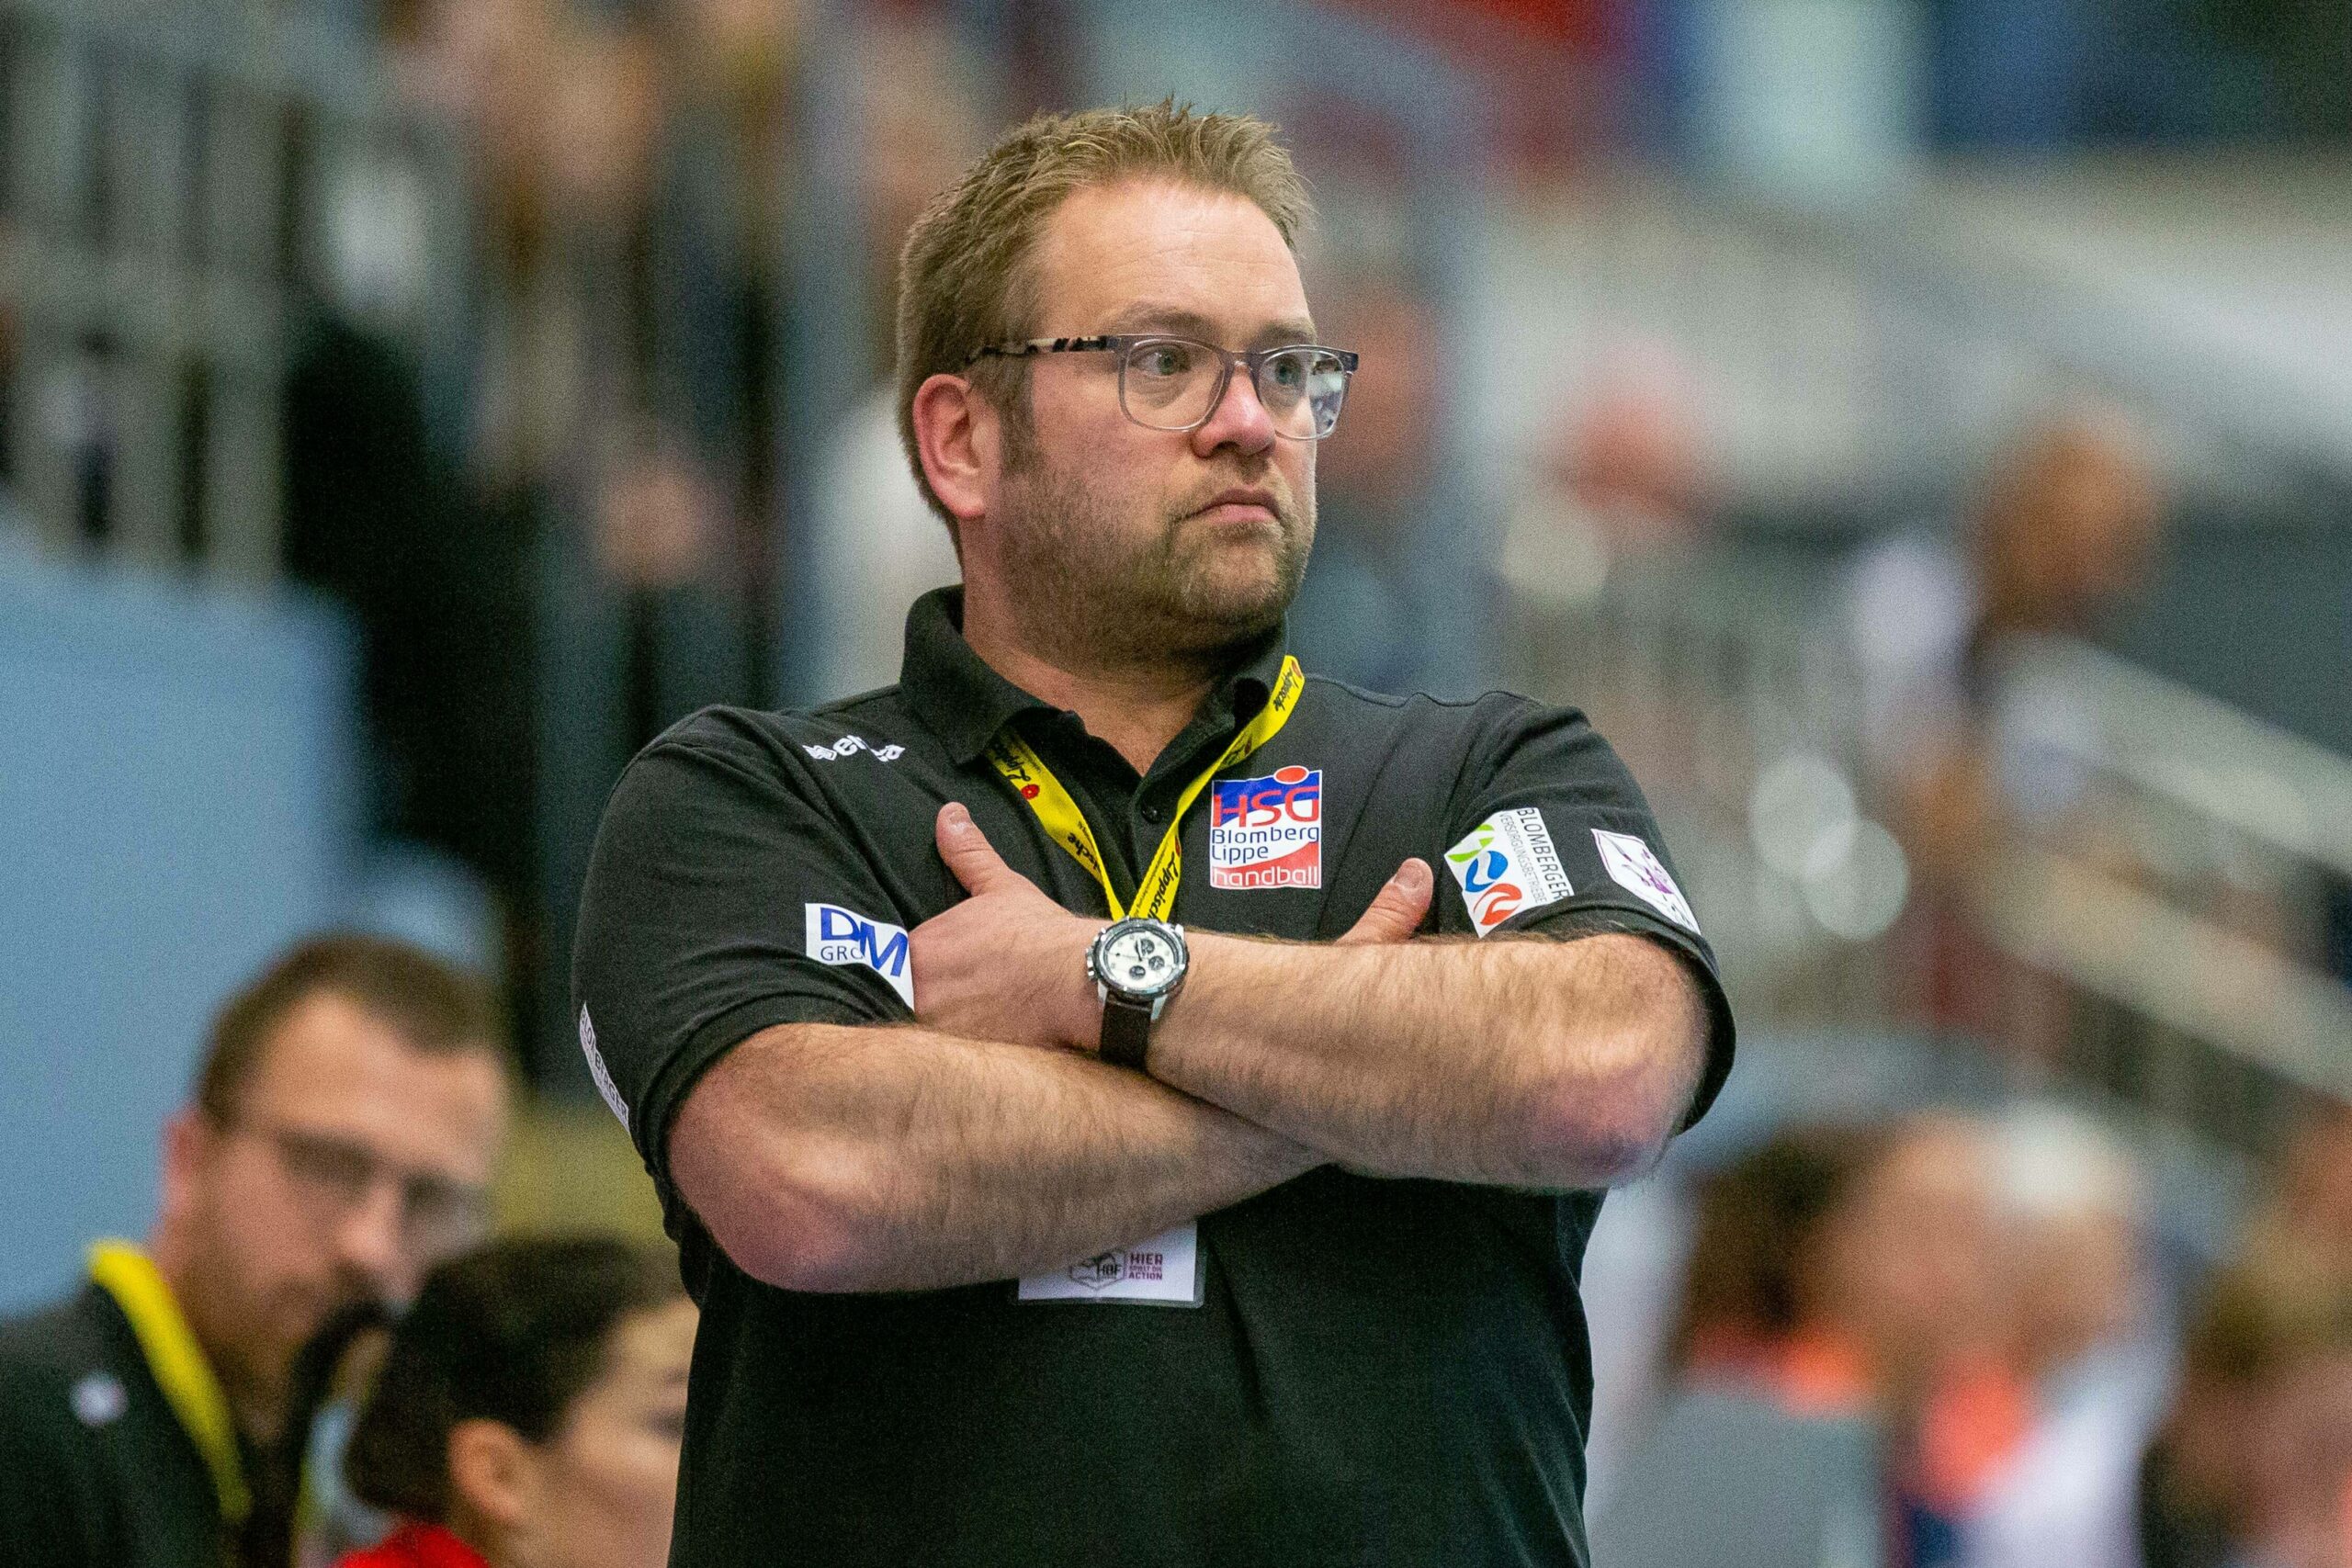 Handball-Trainer Steffen Birkner verschränkt die Arme